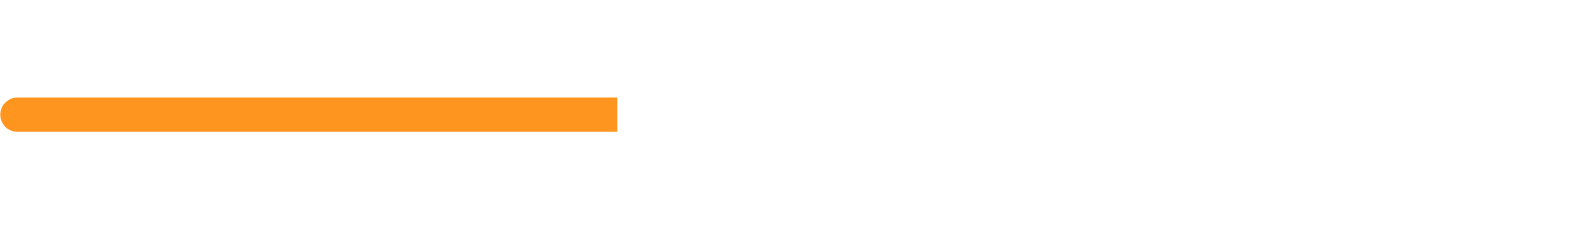 EnBW Energie logo grand pour les fonds sombres (PNG transparent)